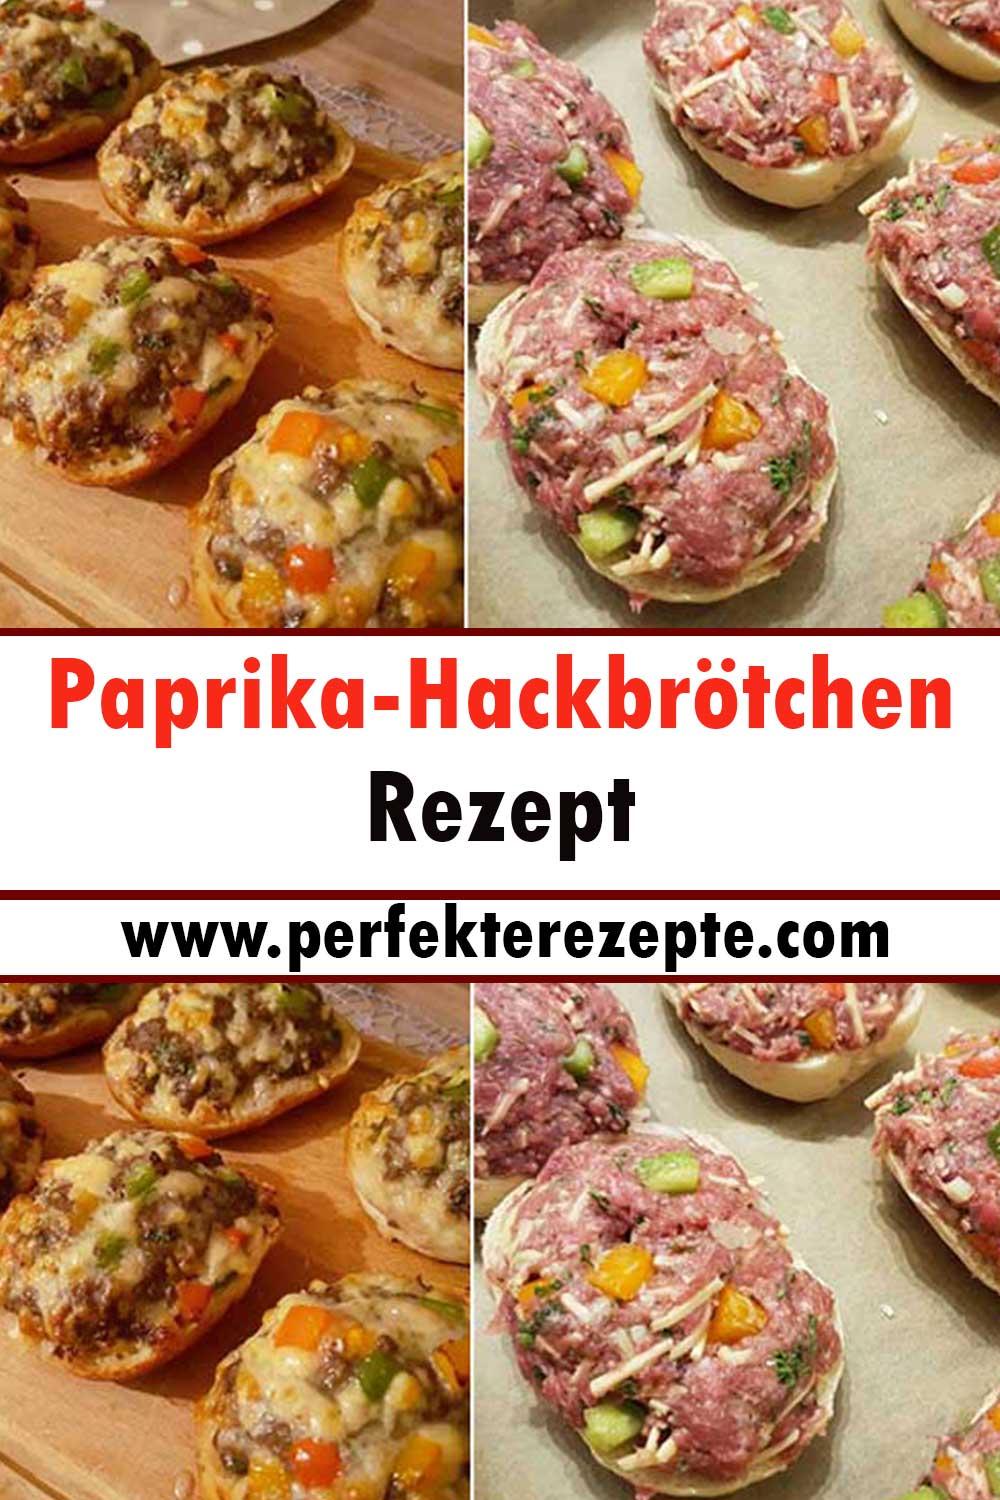 Paprika-Hackbrötchen Rezept